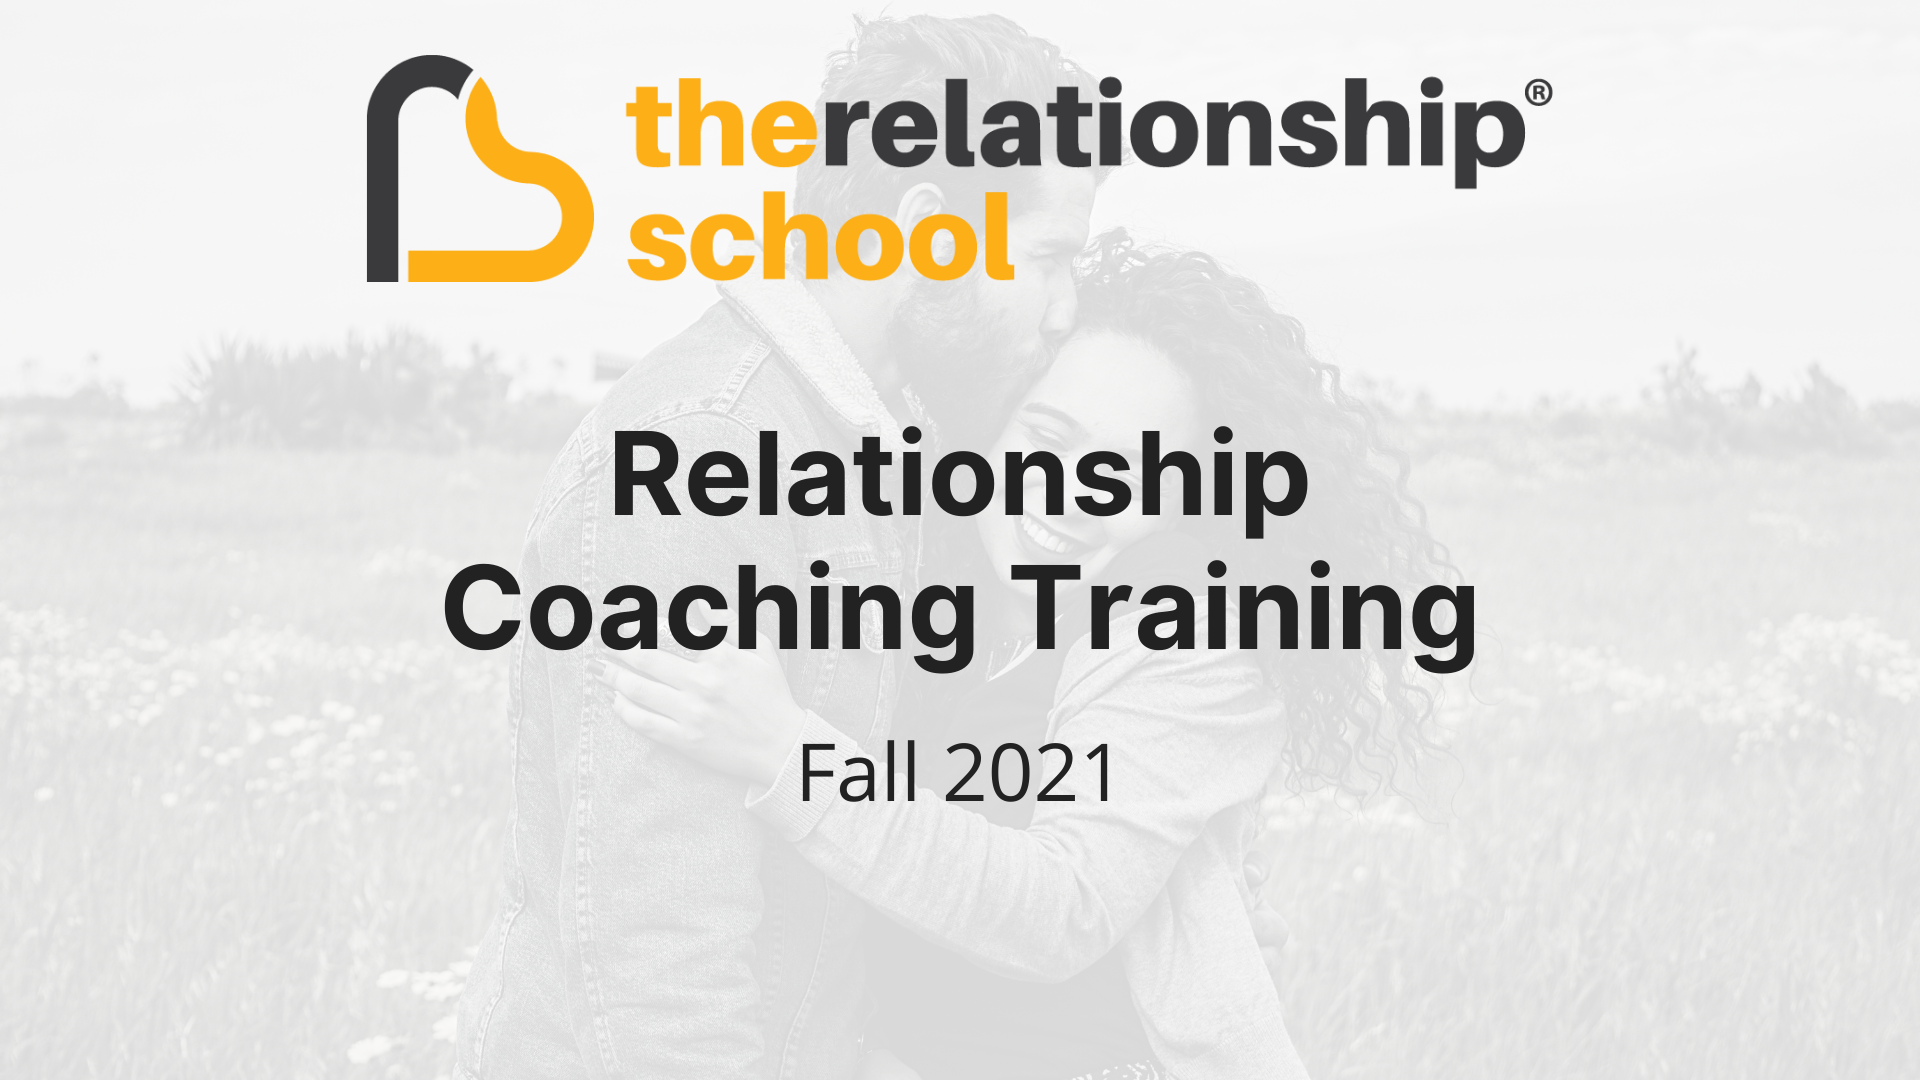 Relationship Coaching Training Fall 2021